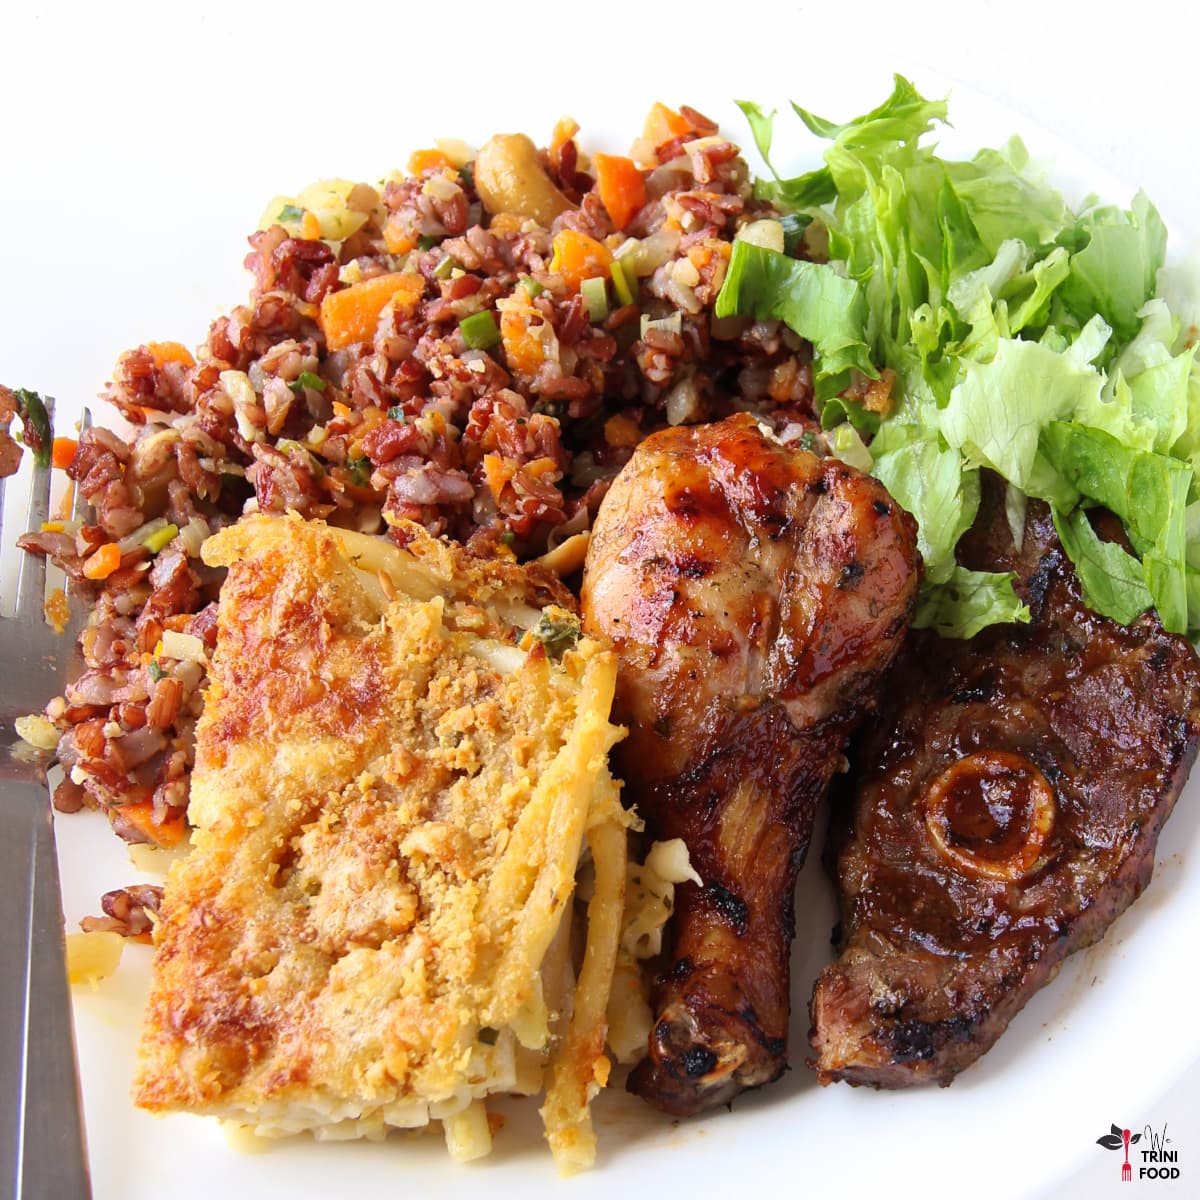 Trinidad Christmas Food: Recipes, Menu Ideas and More